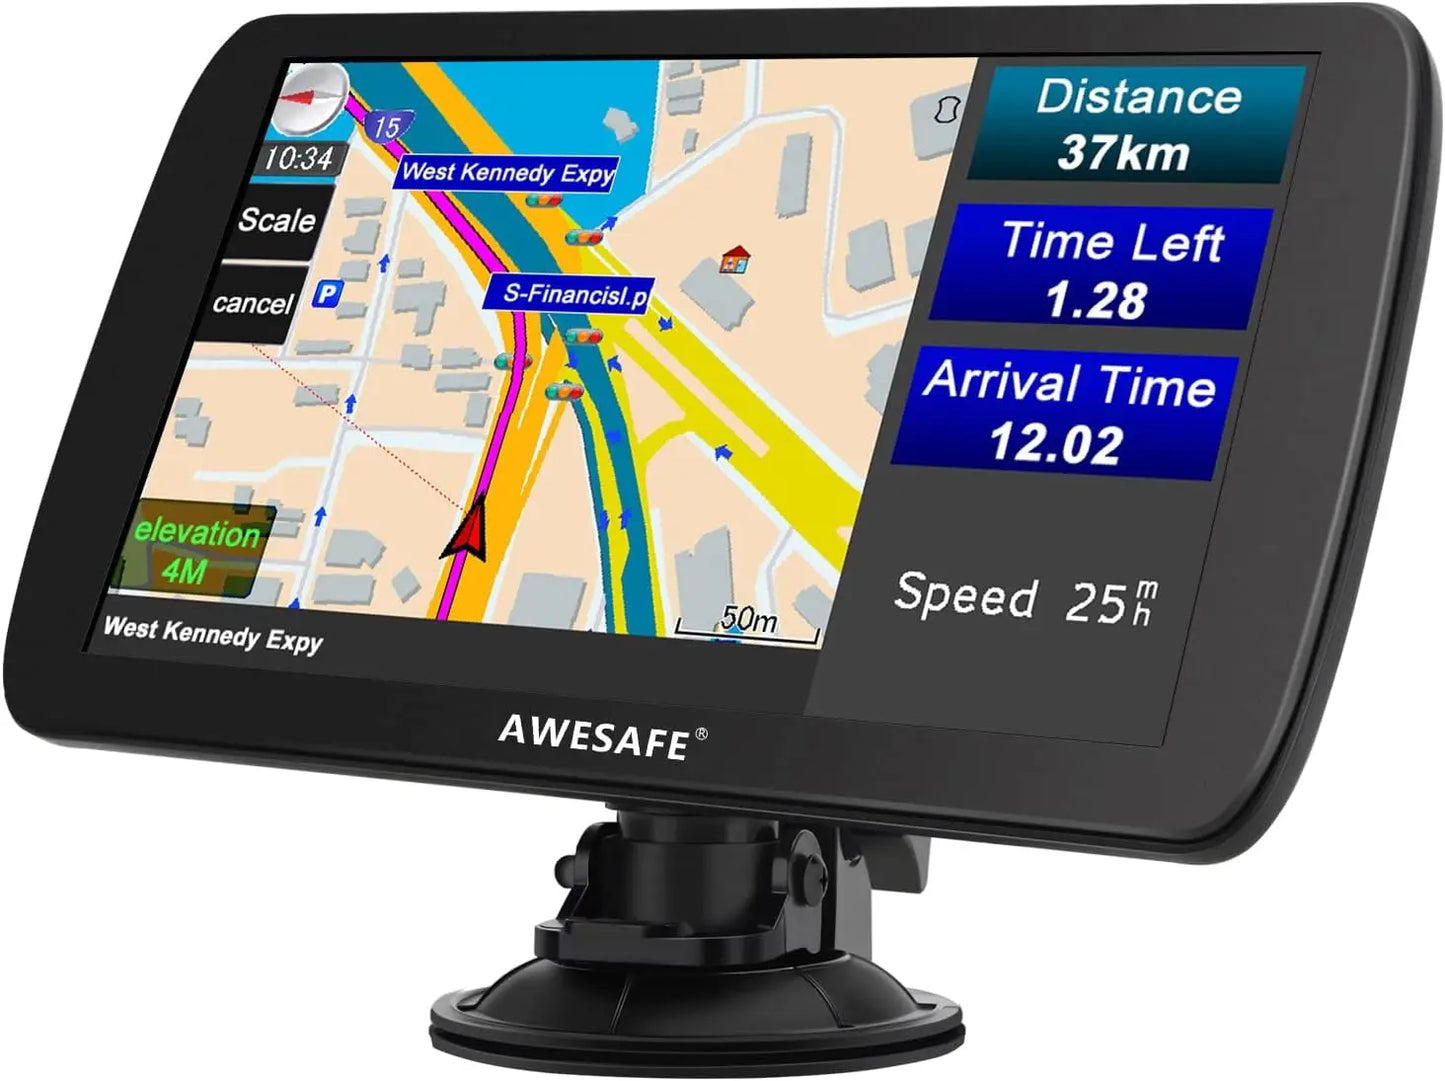 AWESAFE GPS Poids Lourds GPS Voiture 9 Pouce Écran Tactile 52 cartographie Nationale Mises à Jour gratuites Chaque année (9 Pouces + Carte + Bluetooth) AWESAFE SHOP